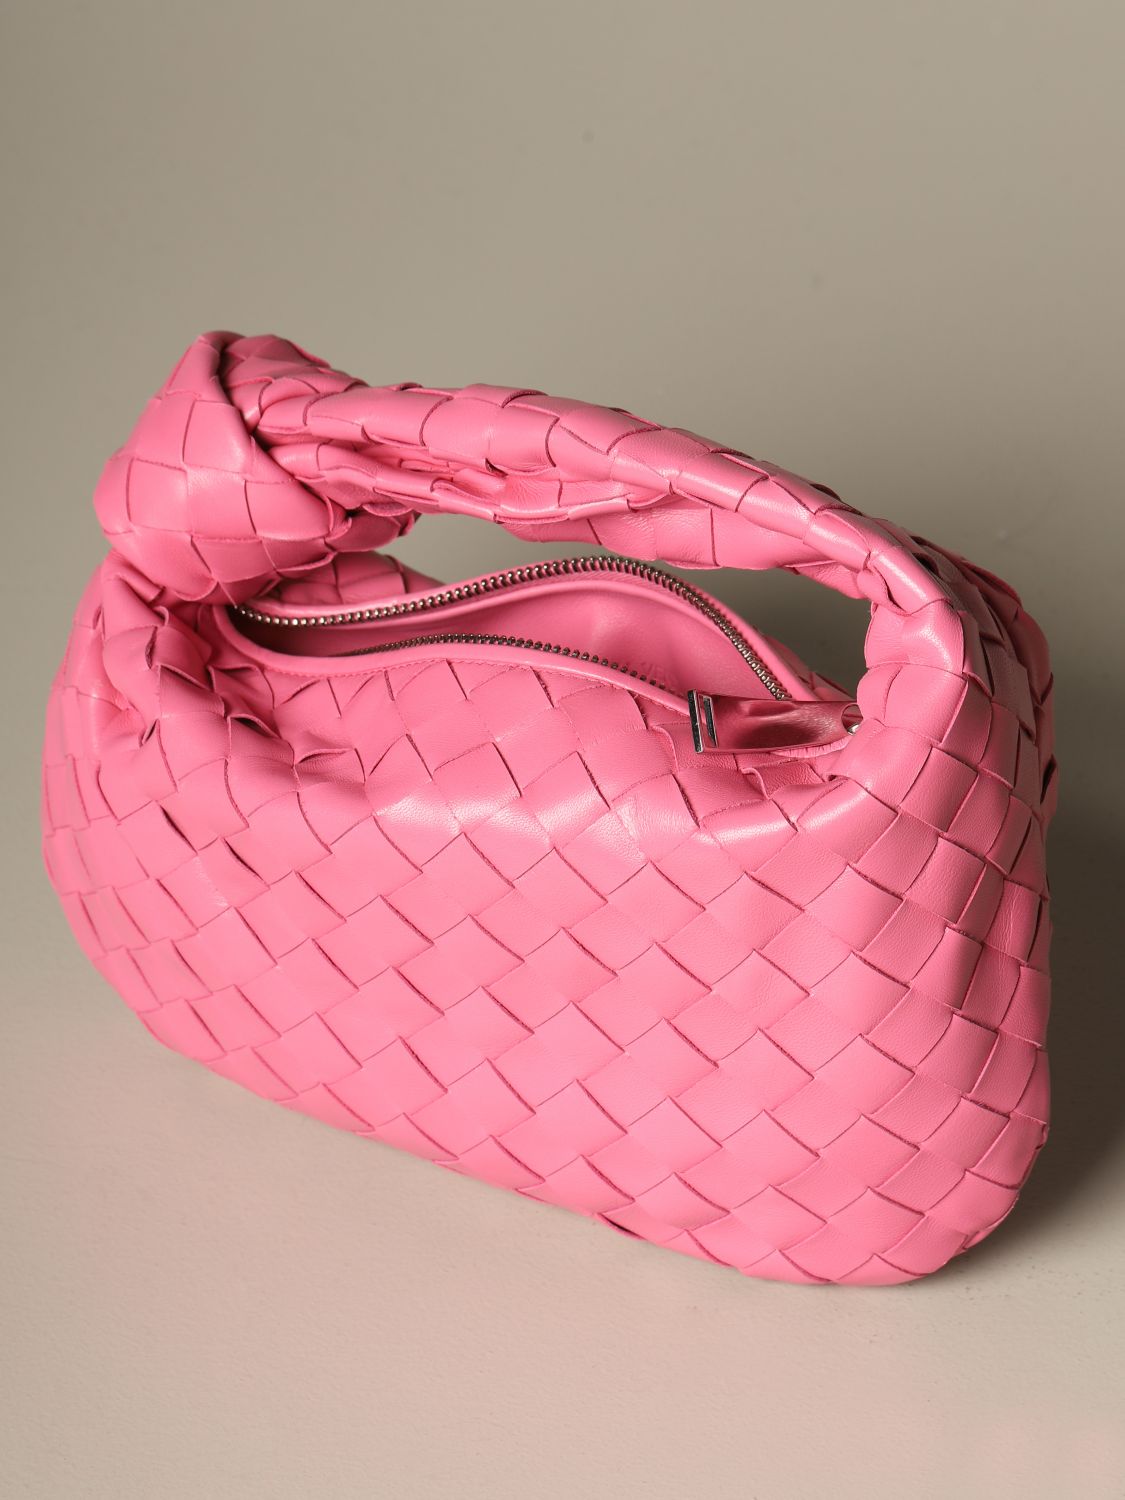 BOTTEGA VENETA: mini hobo Jodie bag in woven leather - Pink | Bottega